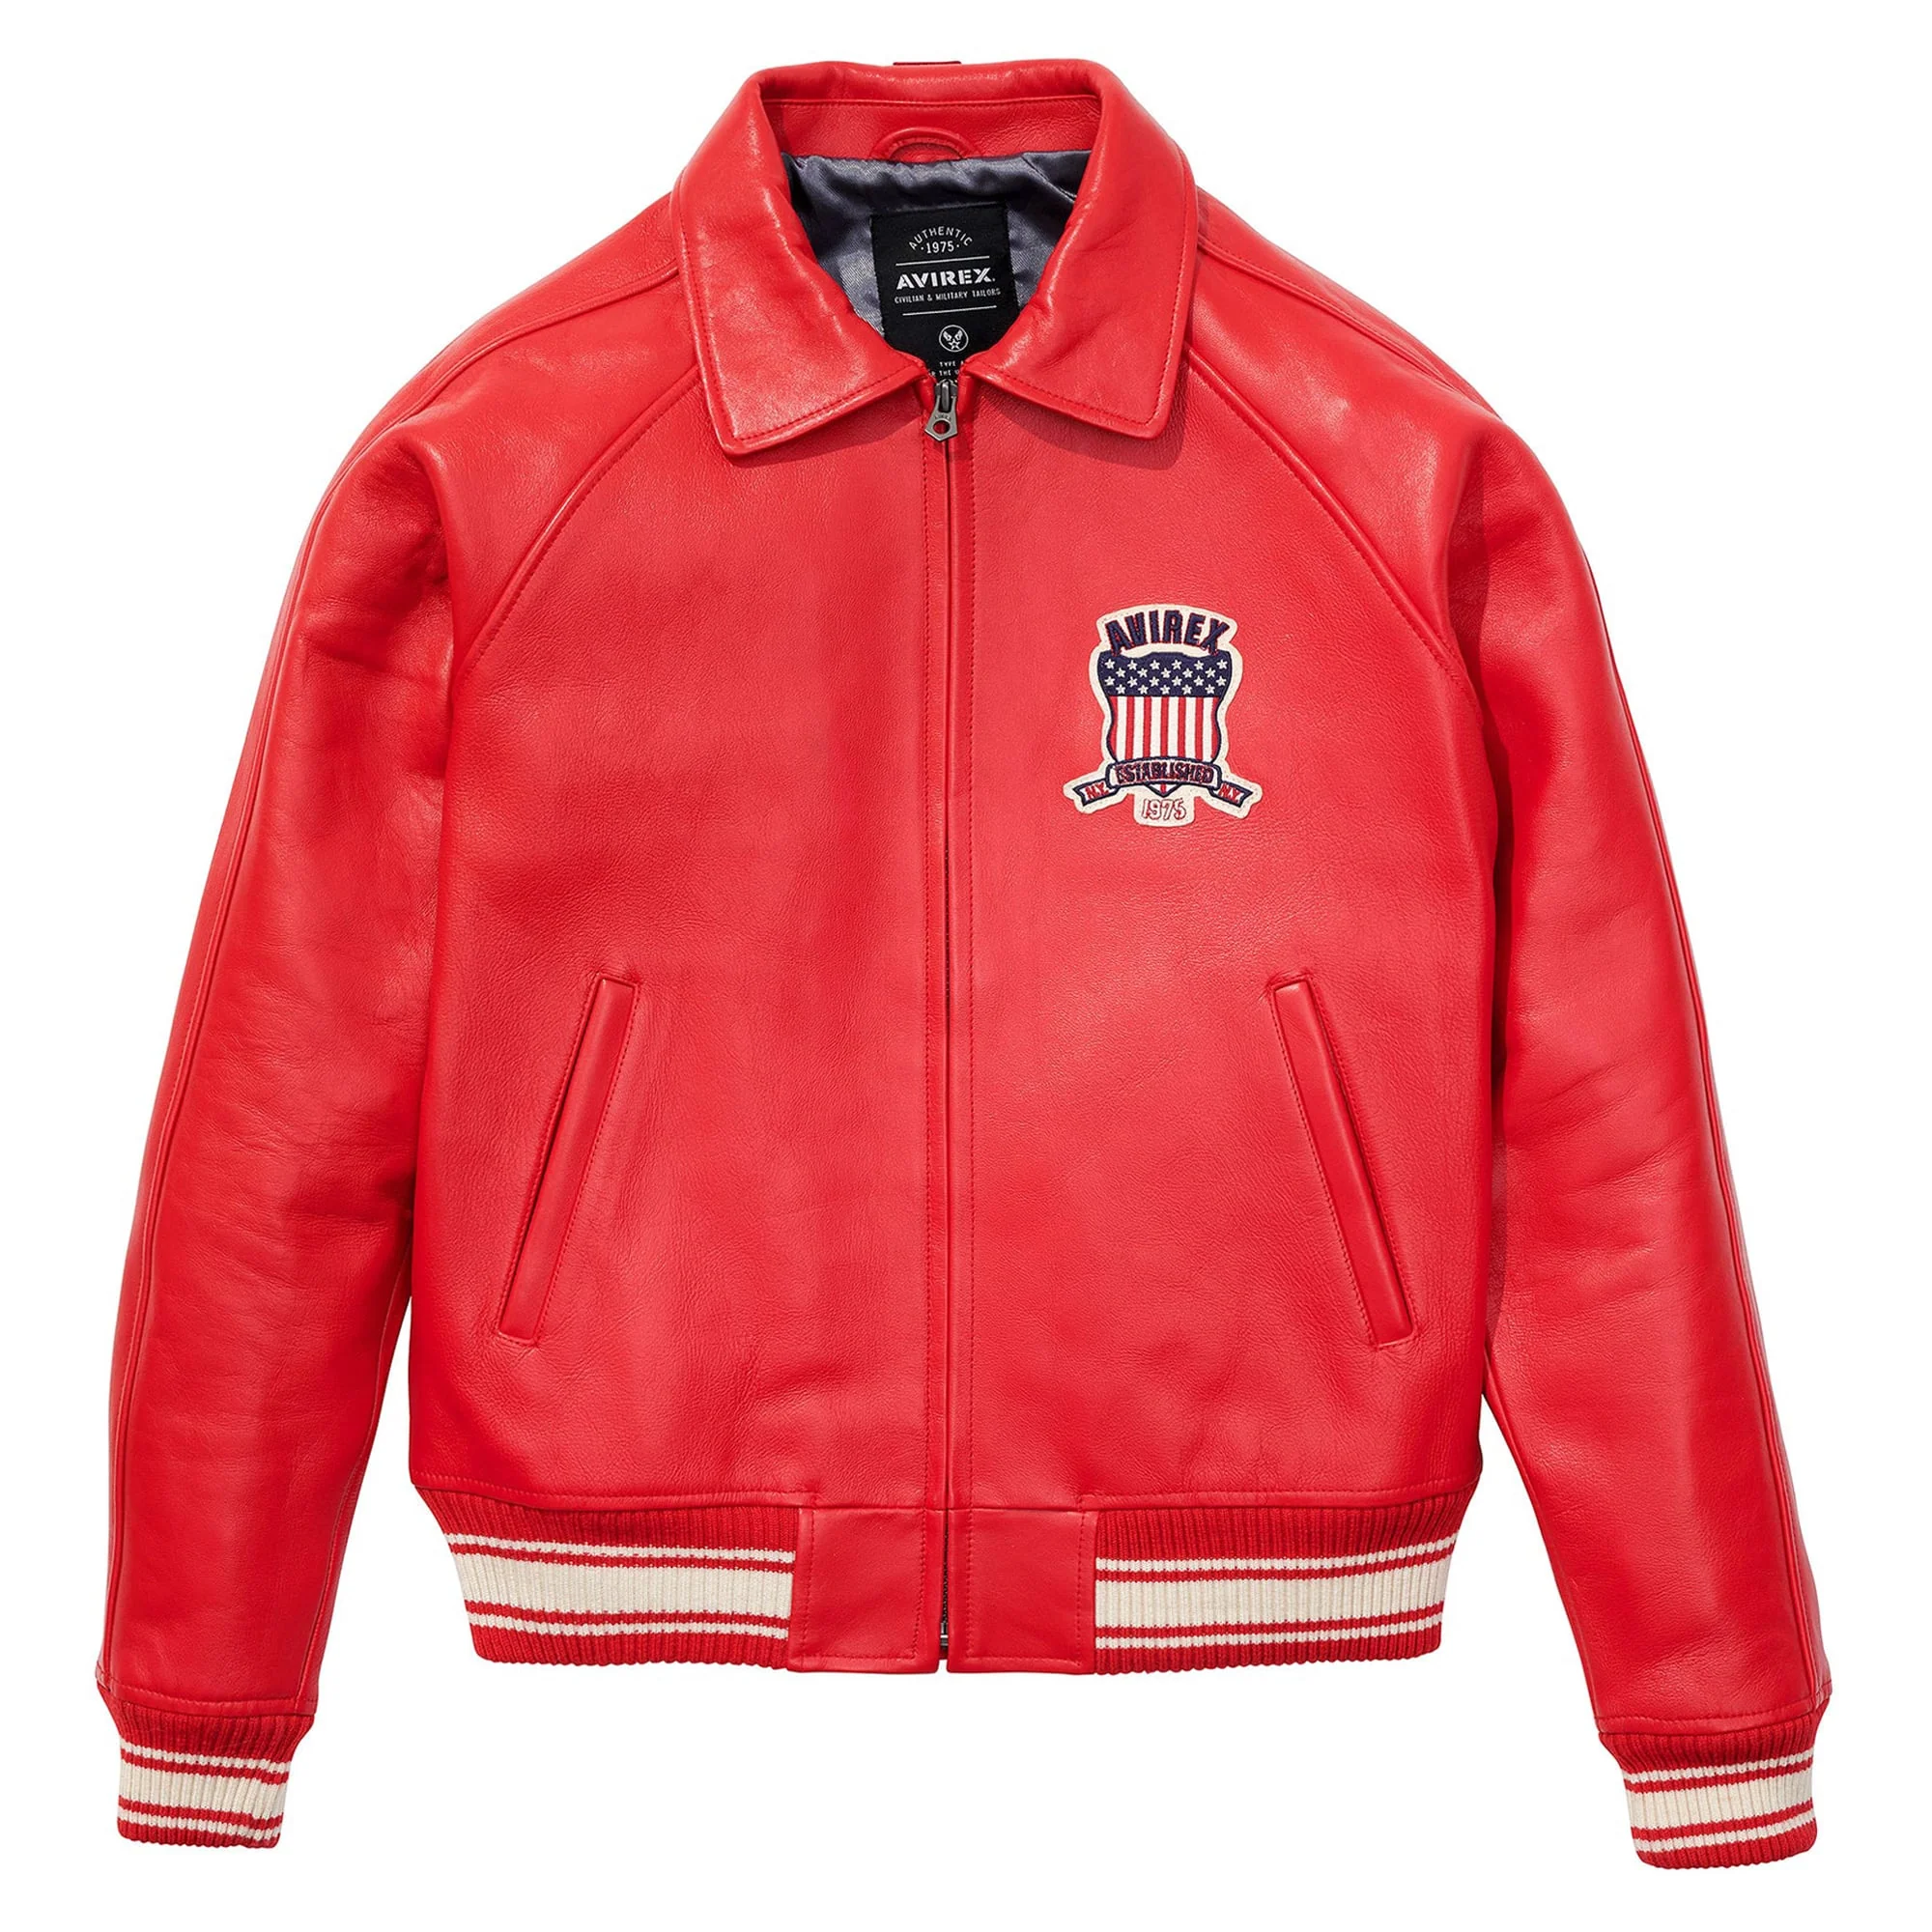 Men's Avirex Leather Jacket Iconic Avirex Jacket (Red) - Civic Leather